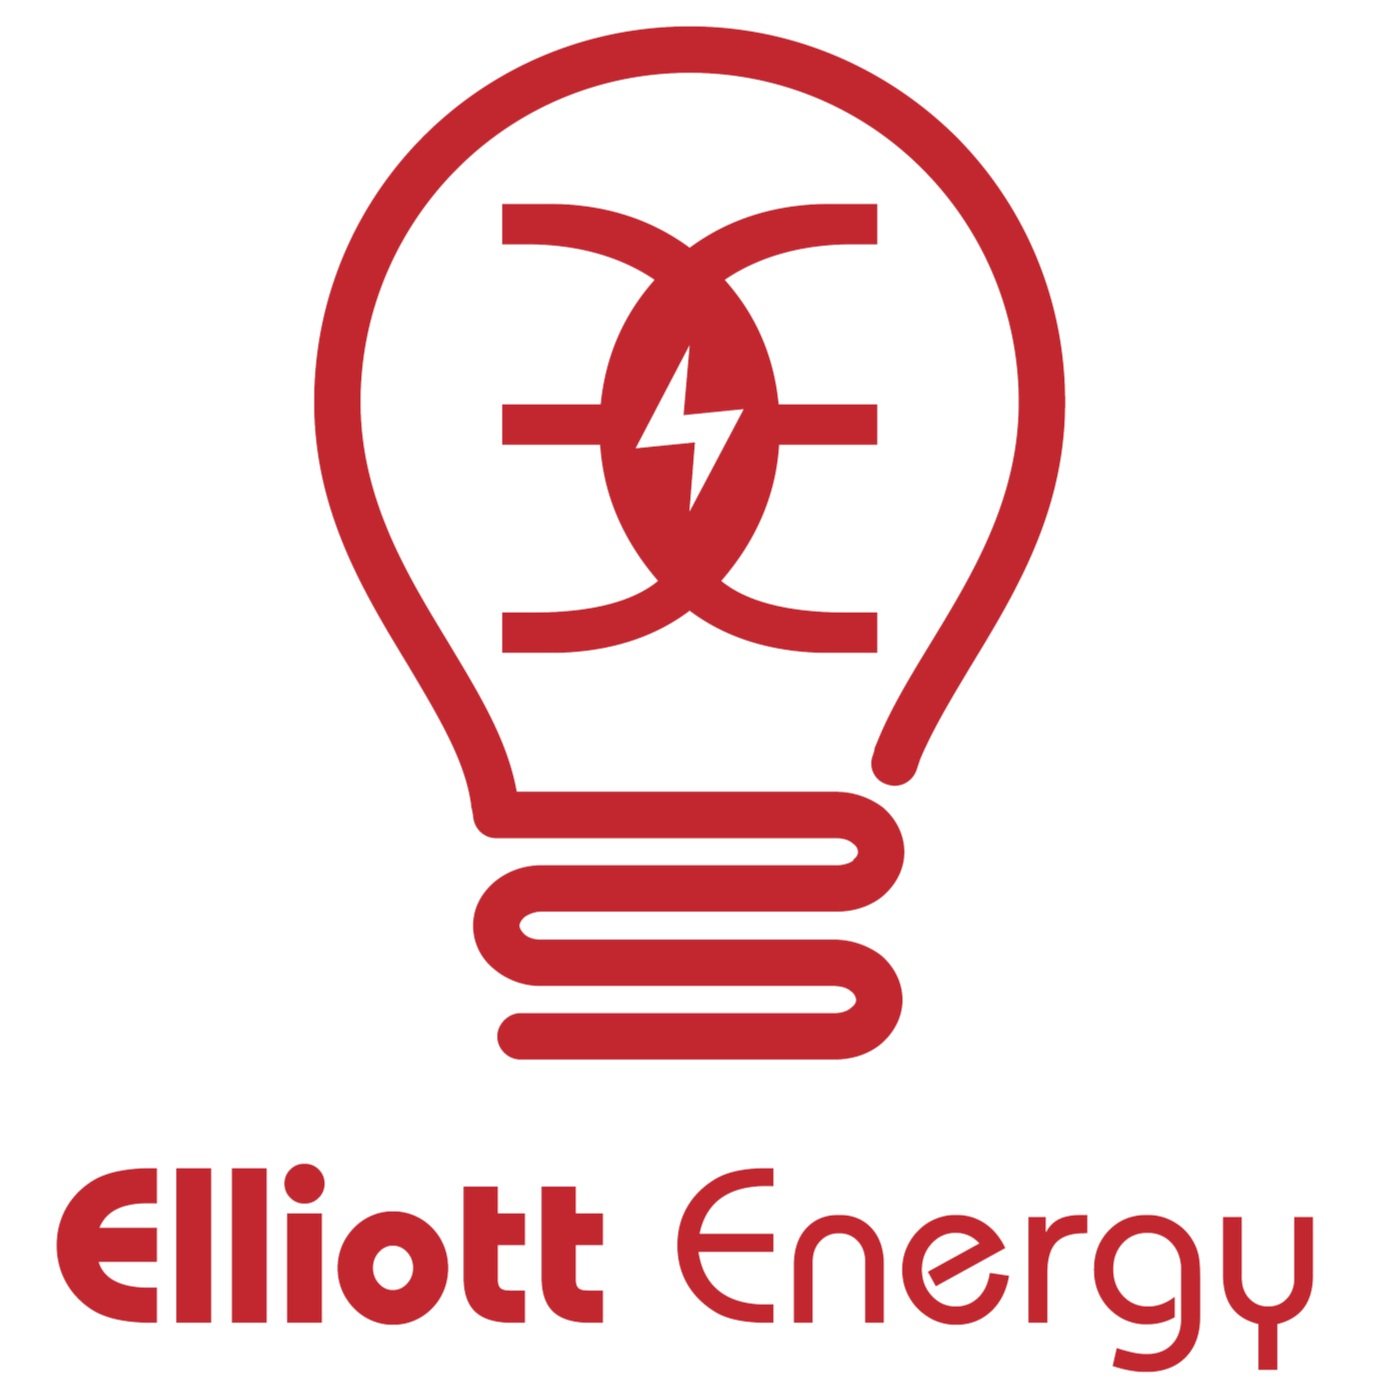 Elliott Energy